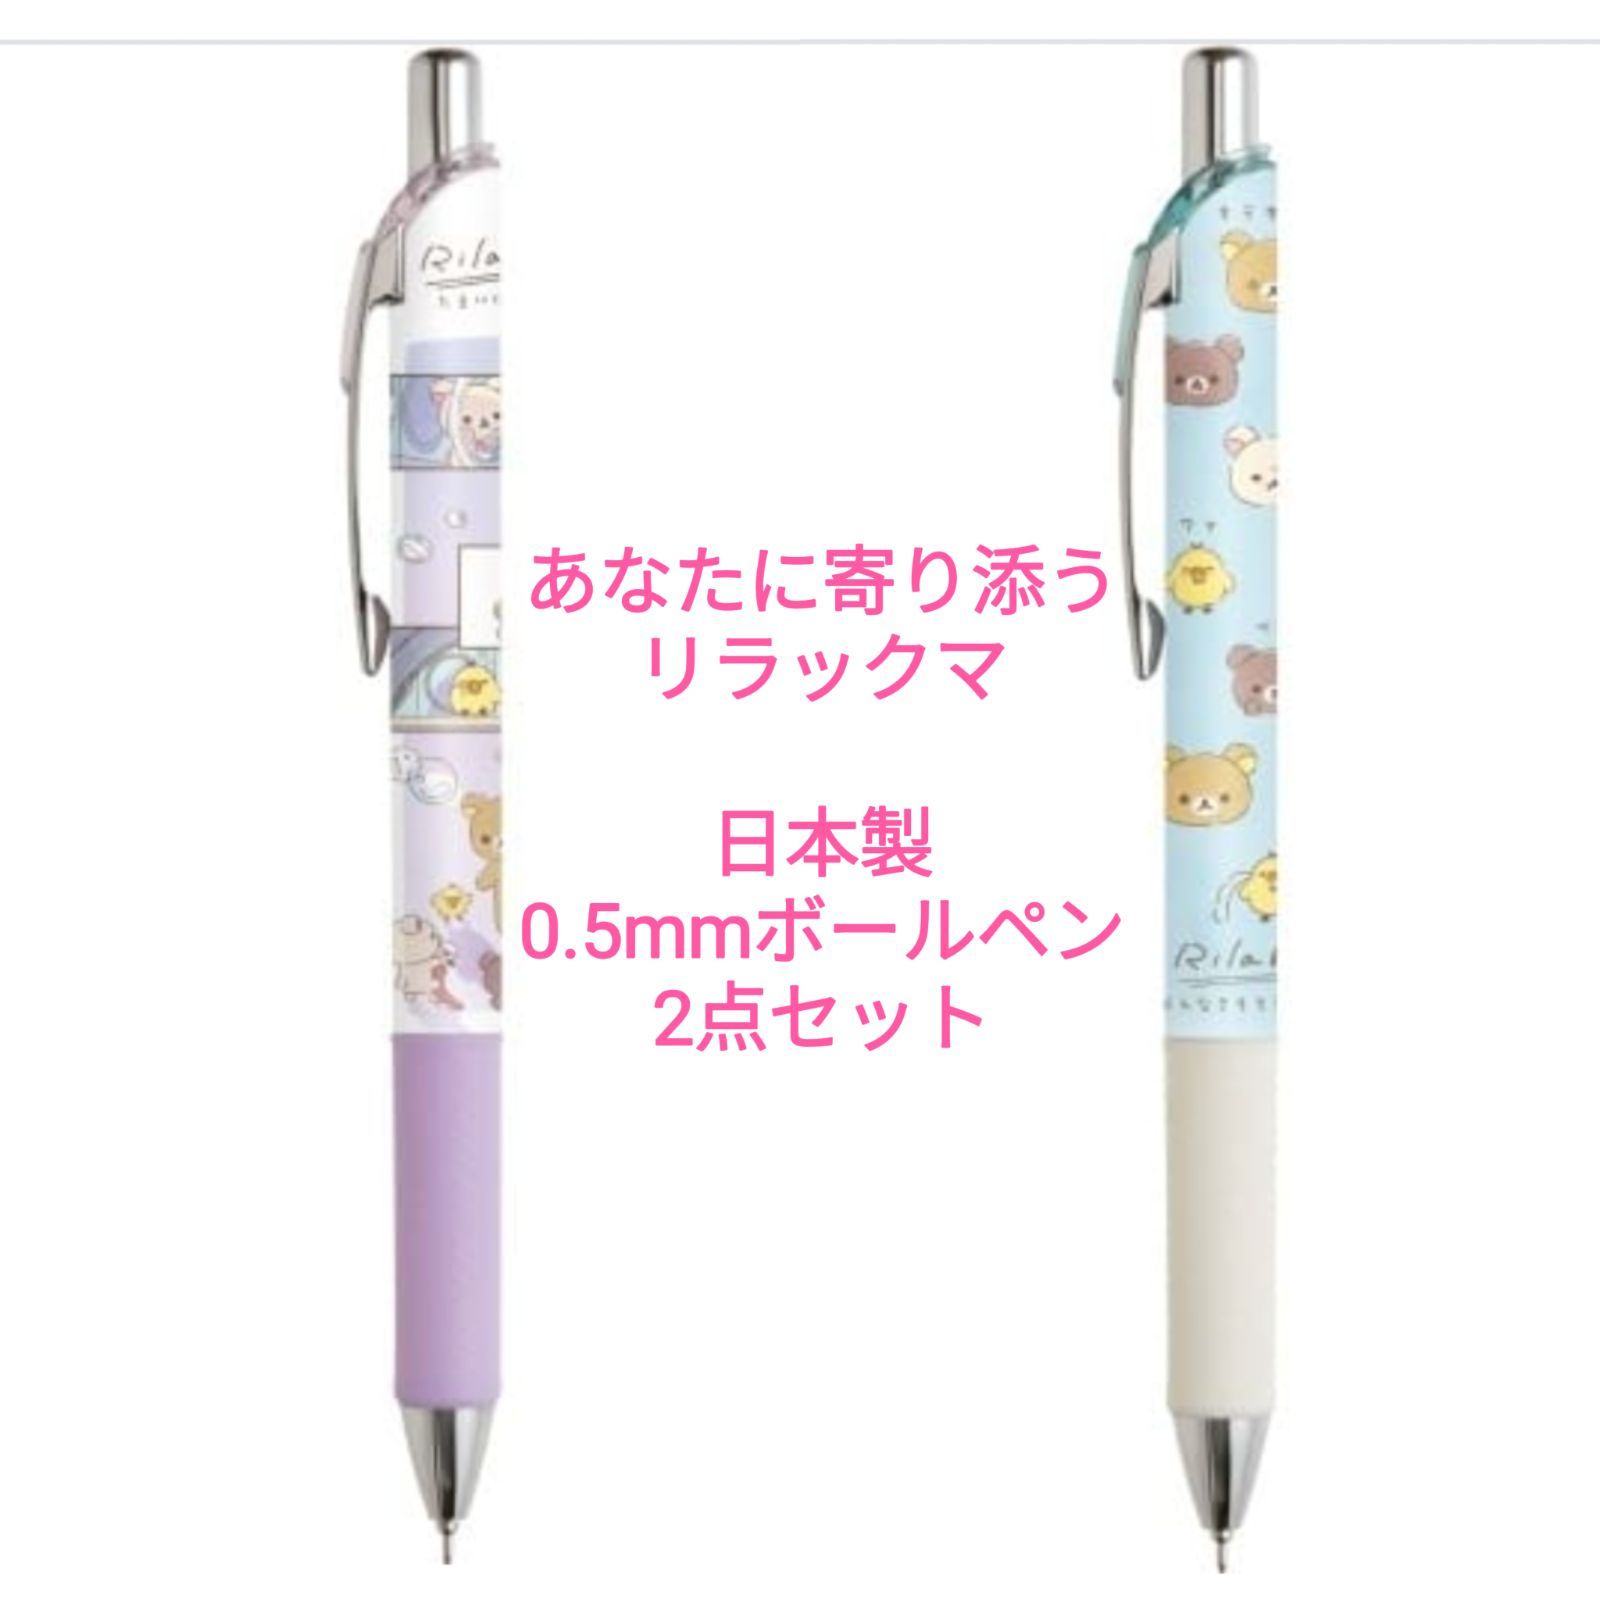 2種セット】リラックマボールペン日本製あなたに寄り添う